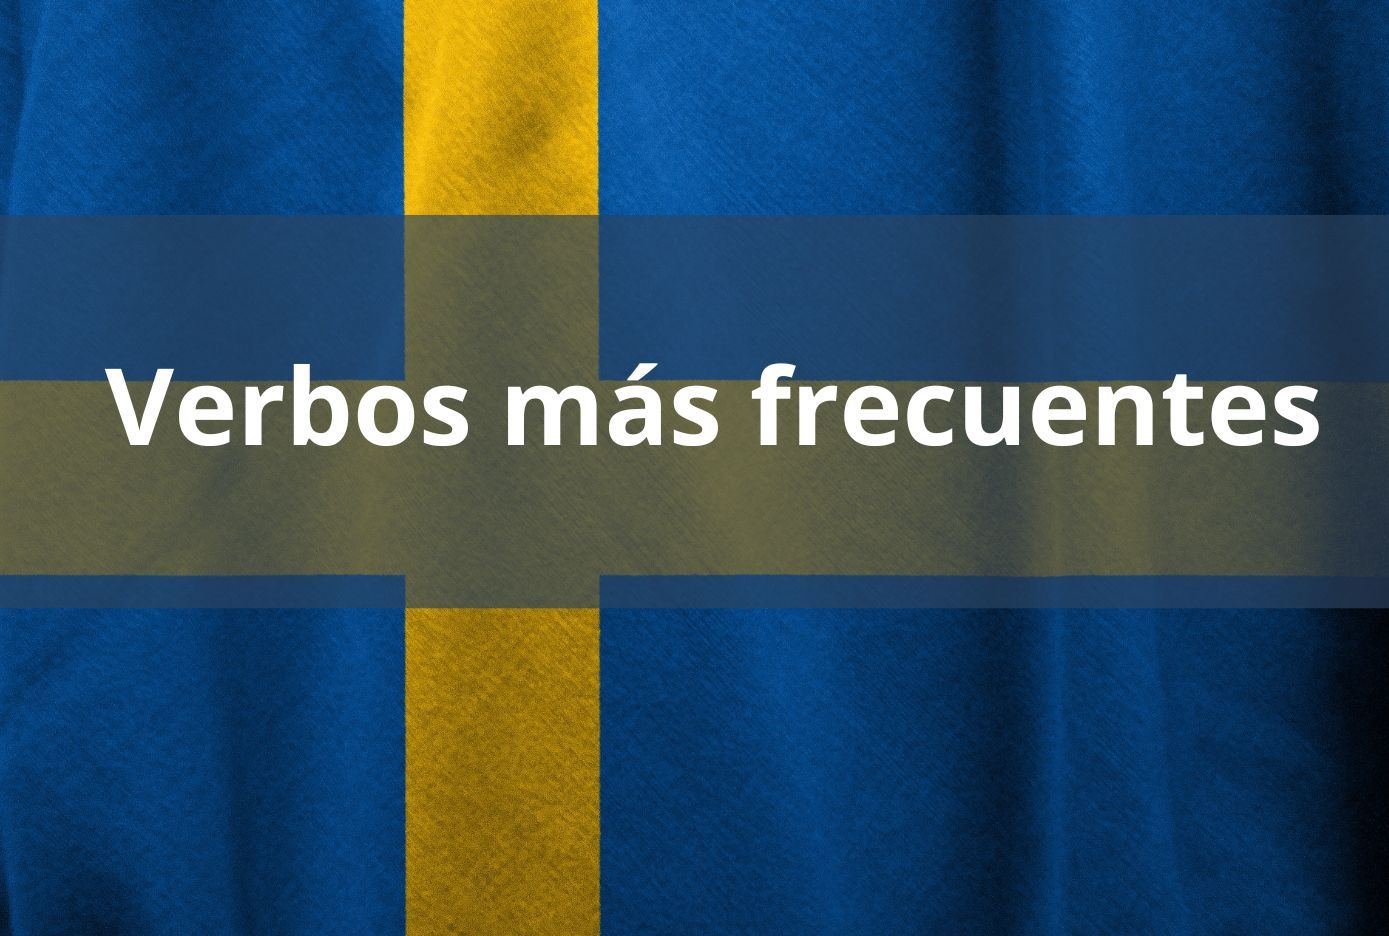 los verbos mas frecuentes en sueco